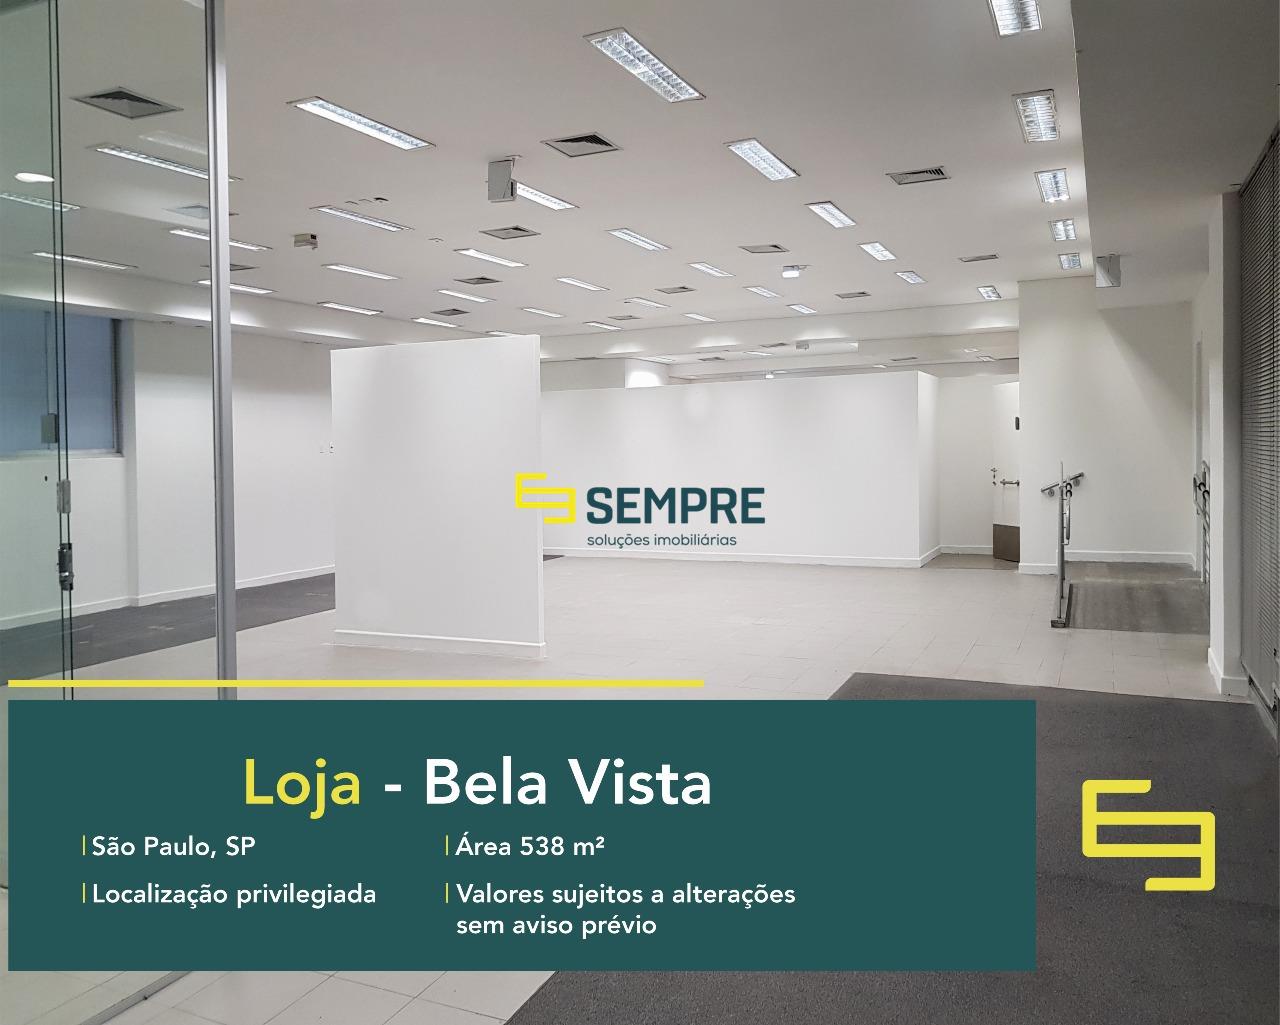 Loja para alugar no Bela Vista em São Paulo, excelente localização. O estabelecimento comercial conta, sobretudo, com área de 538 m².